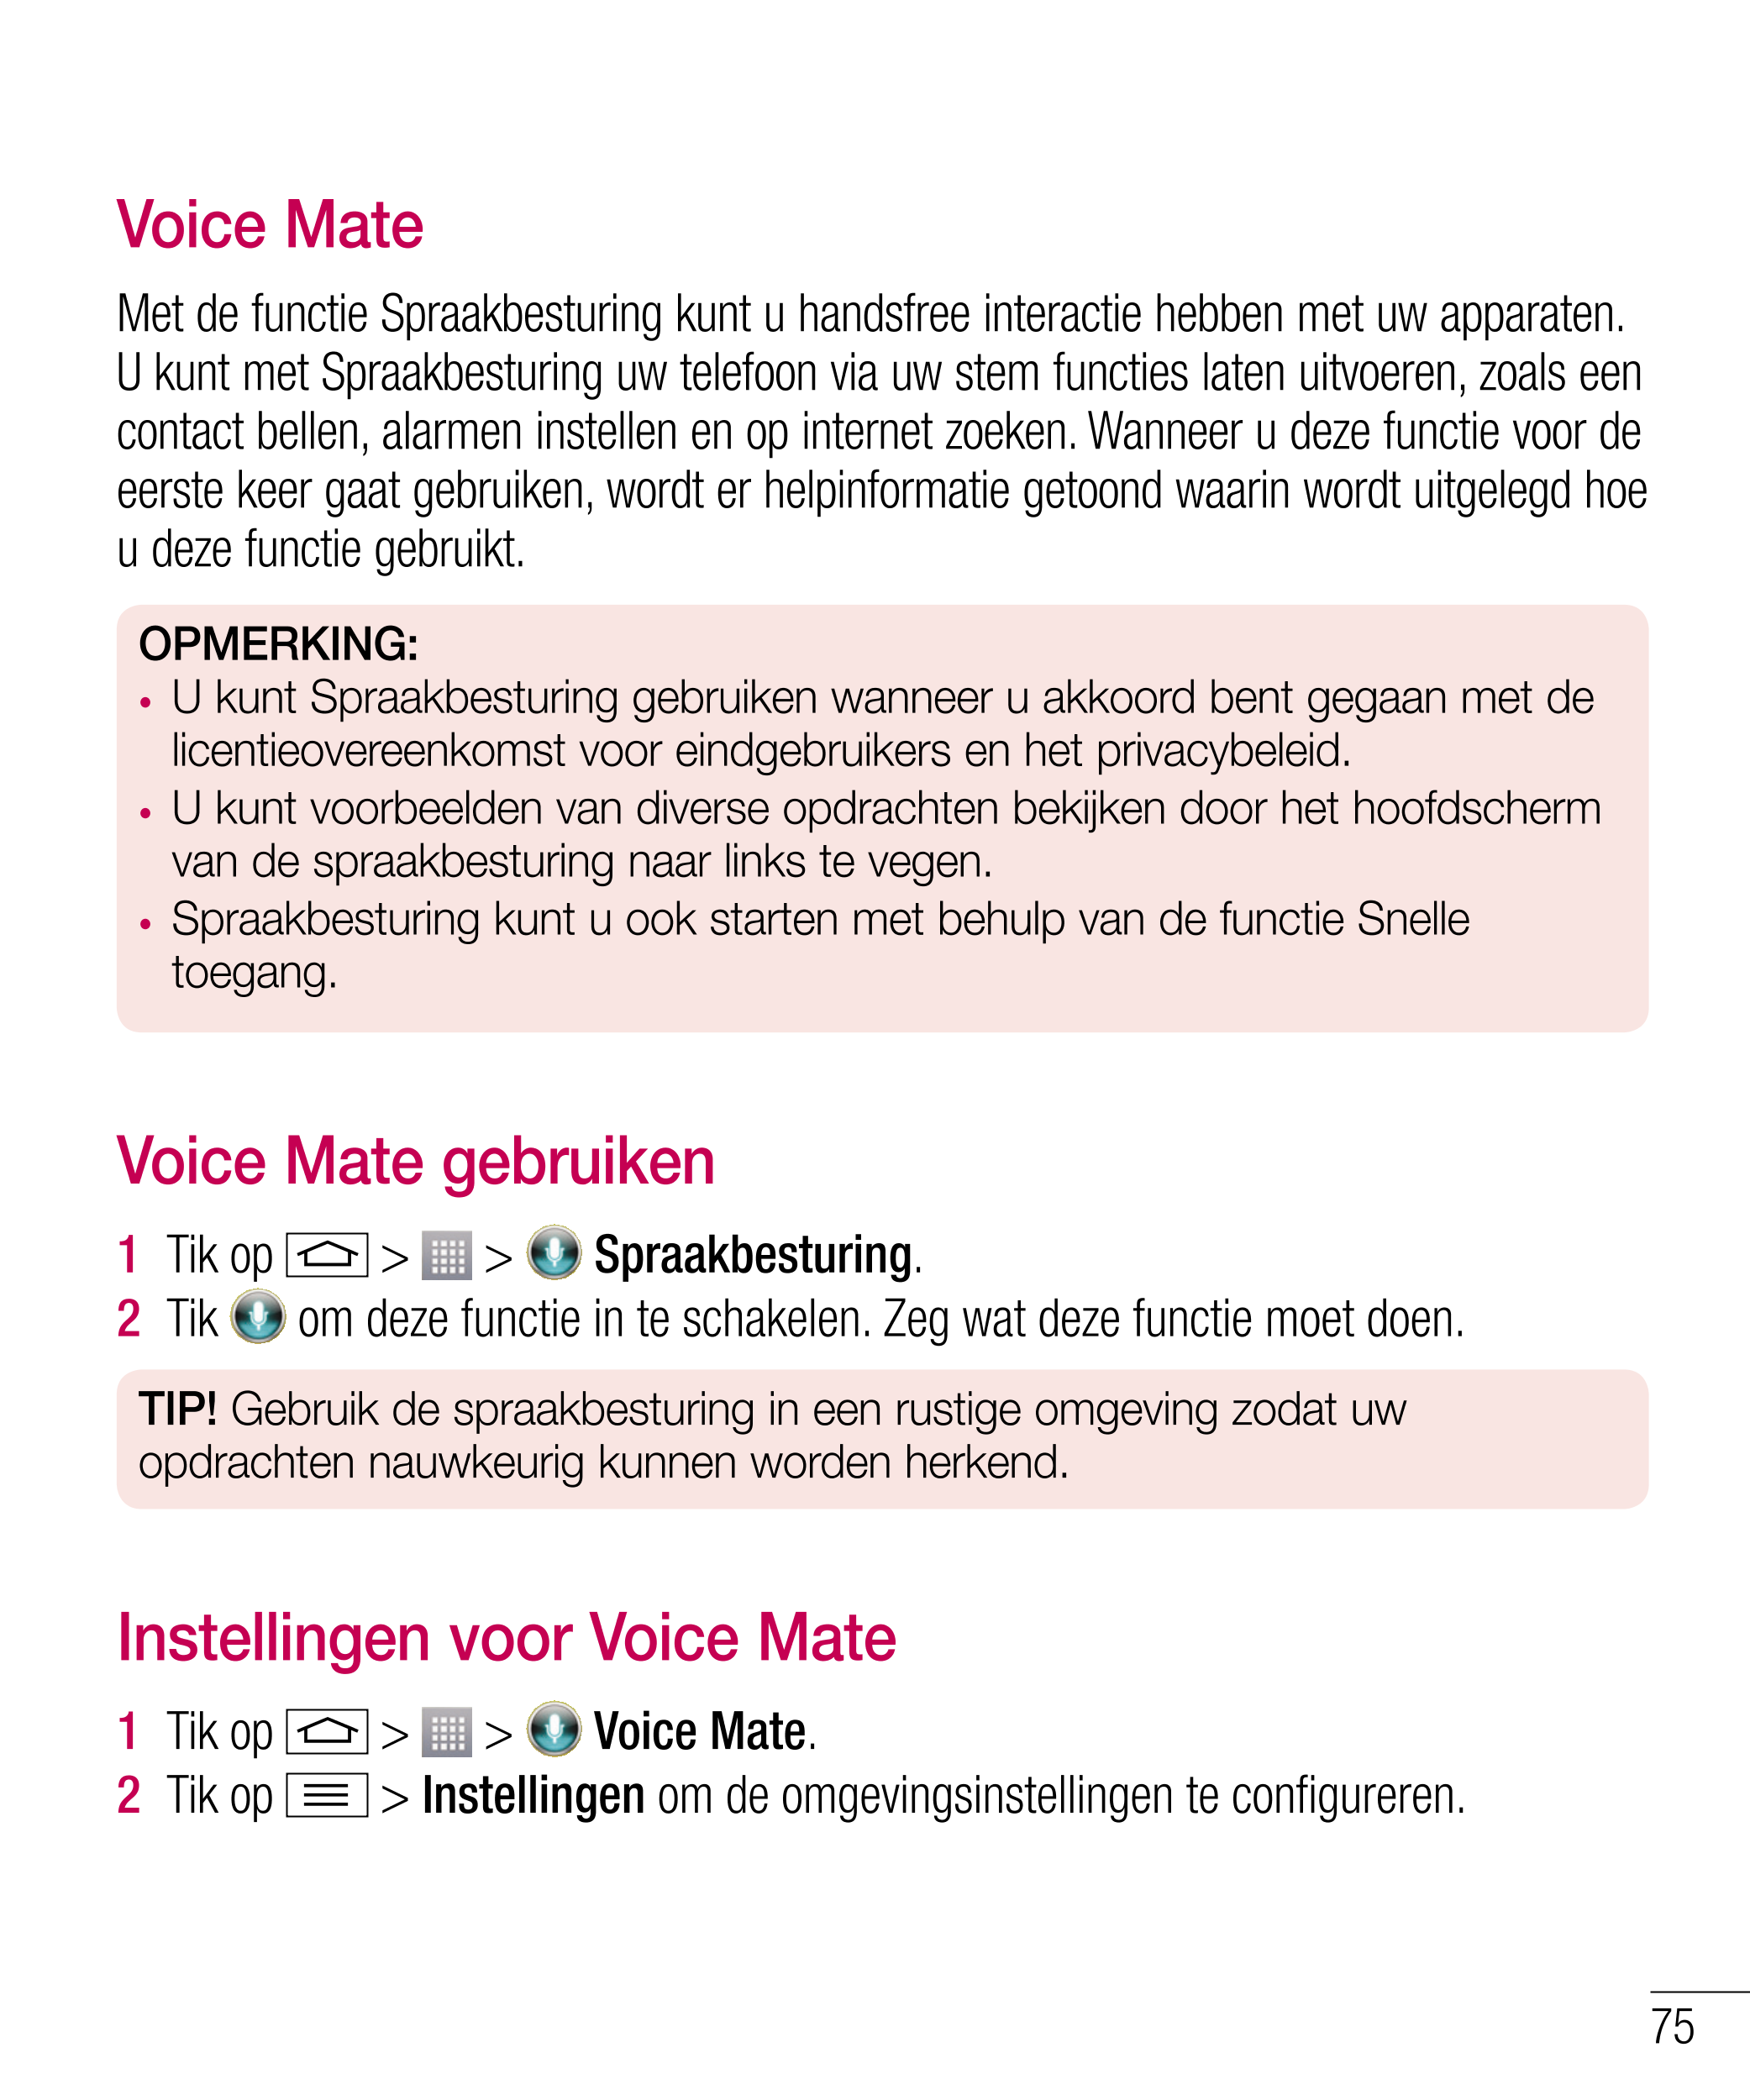 Voice Mate
Met de functie Spraakbesturing kunt u handsfree interactie hebben met uw apparaten. 
U kunt met Spraakbesturing uw te